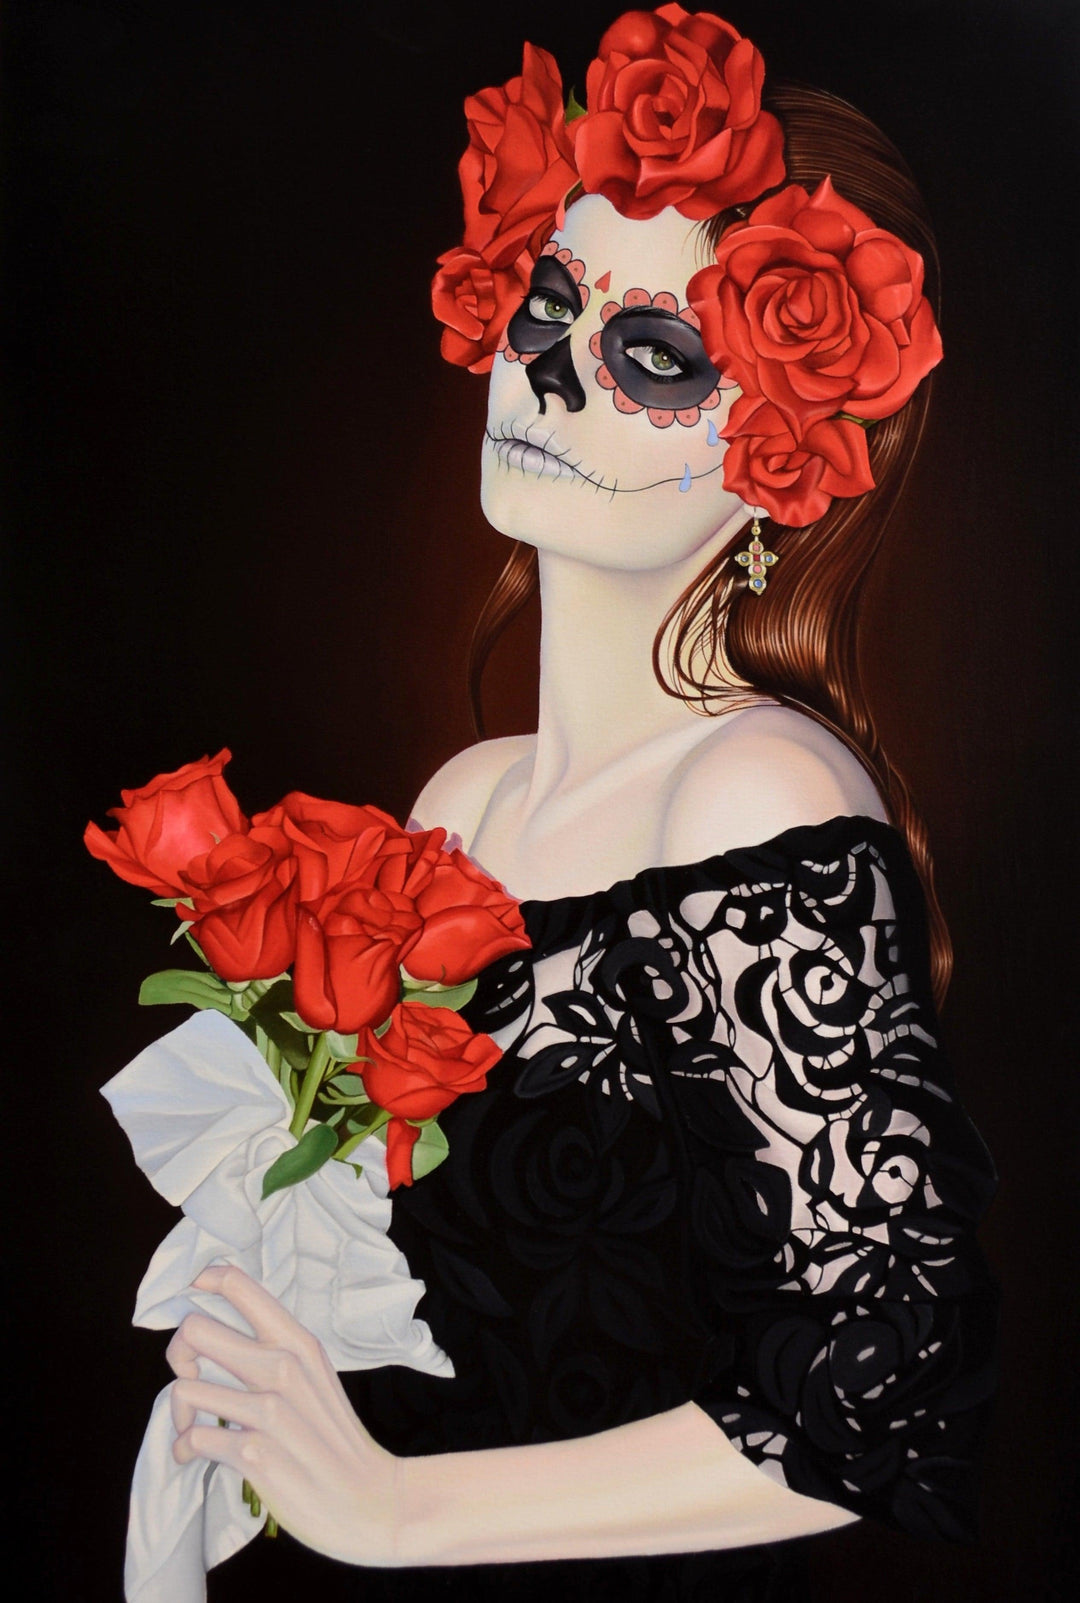 Suzy Smith | "Dia de los Muertos" | 11 x 8.5" - Abend Gallery